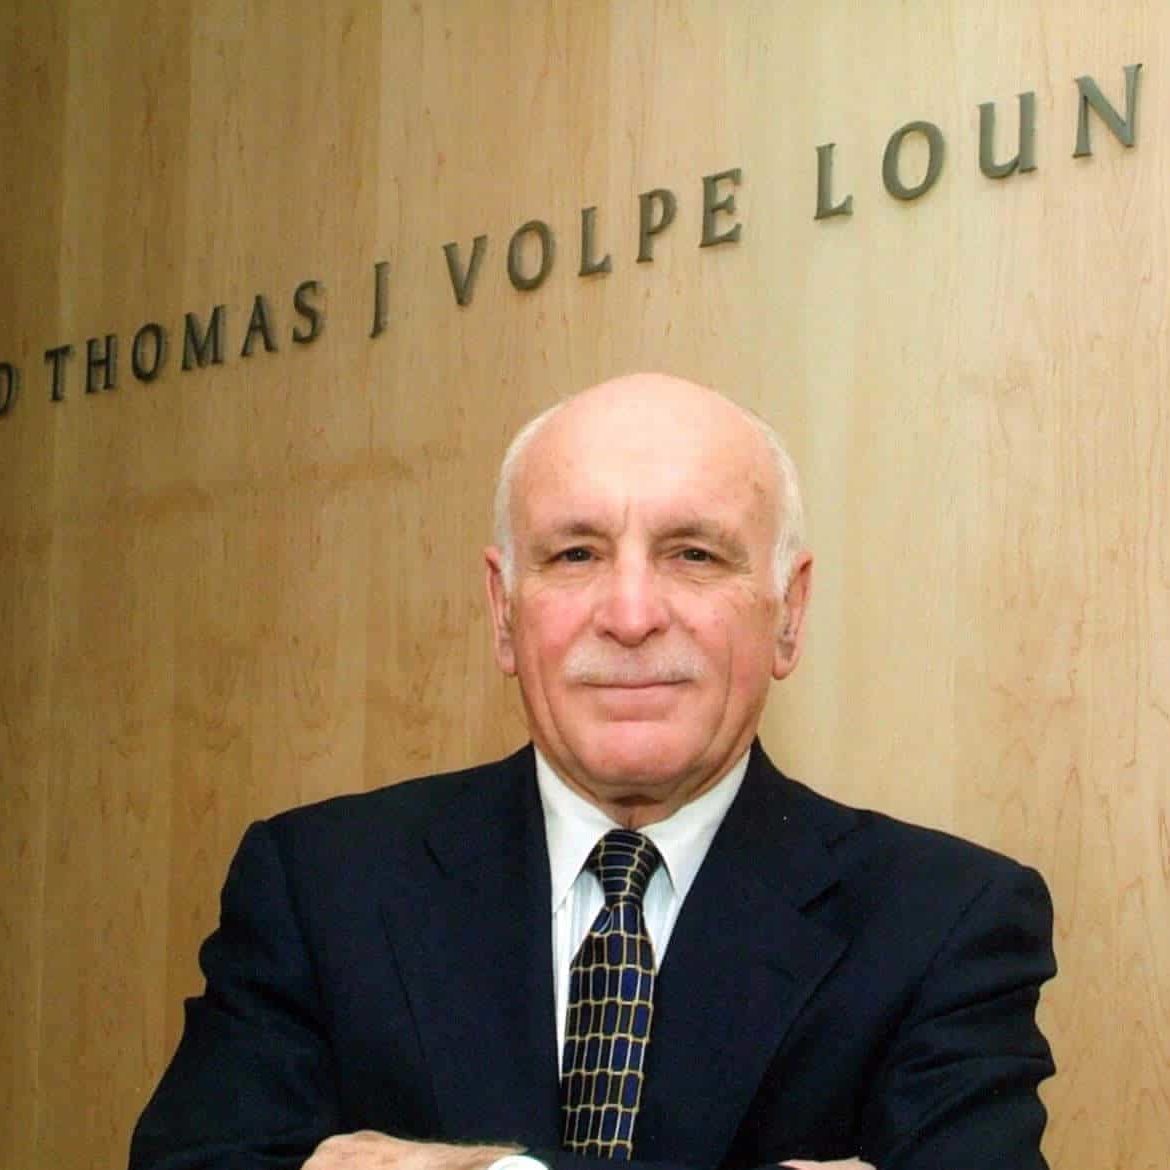 Thomas Volpe '53